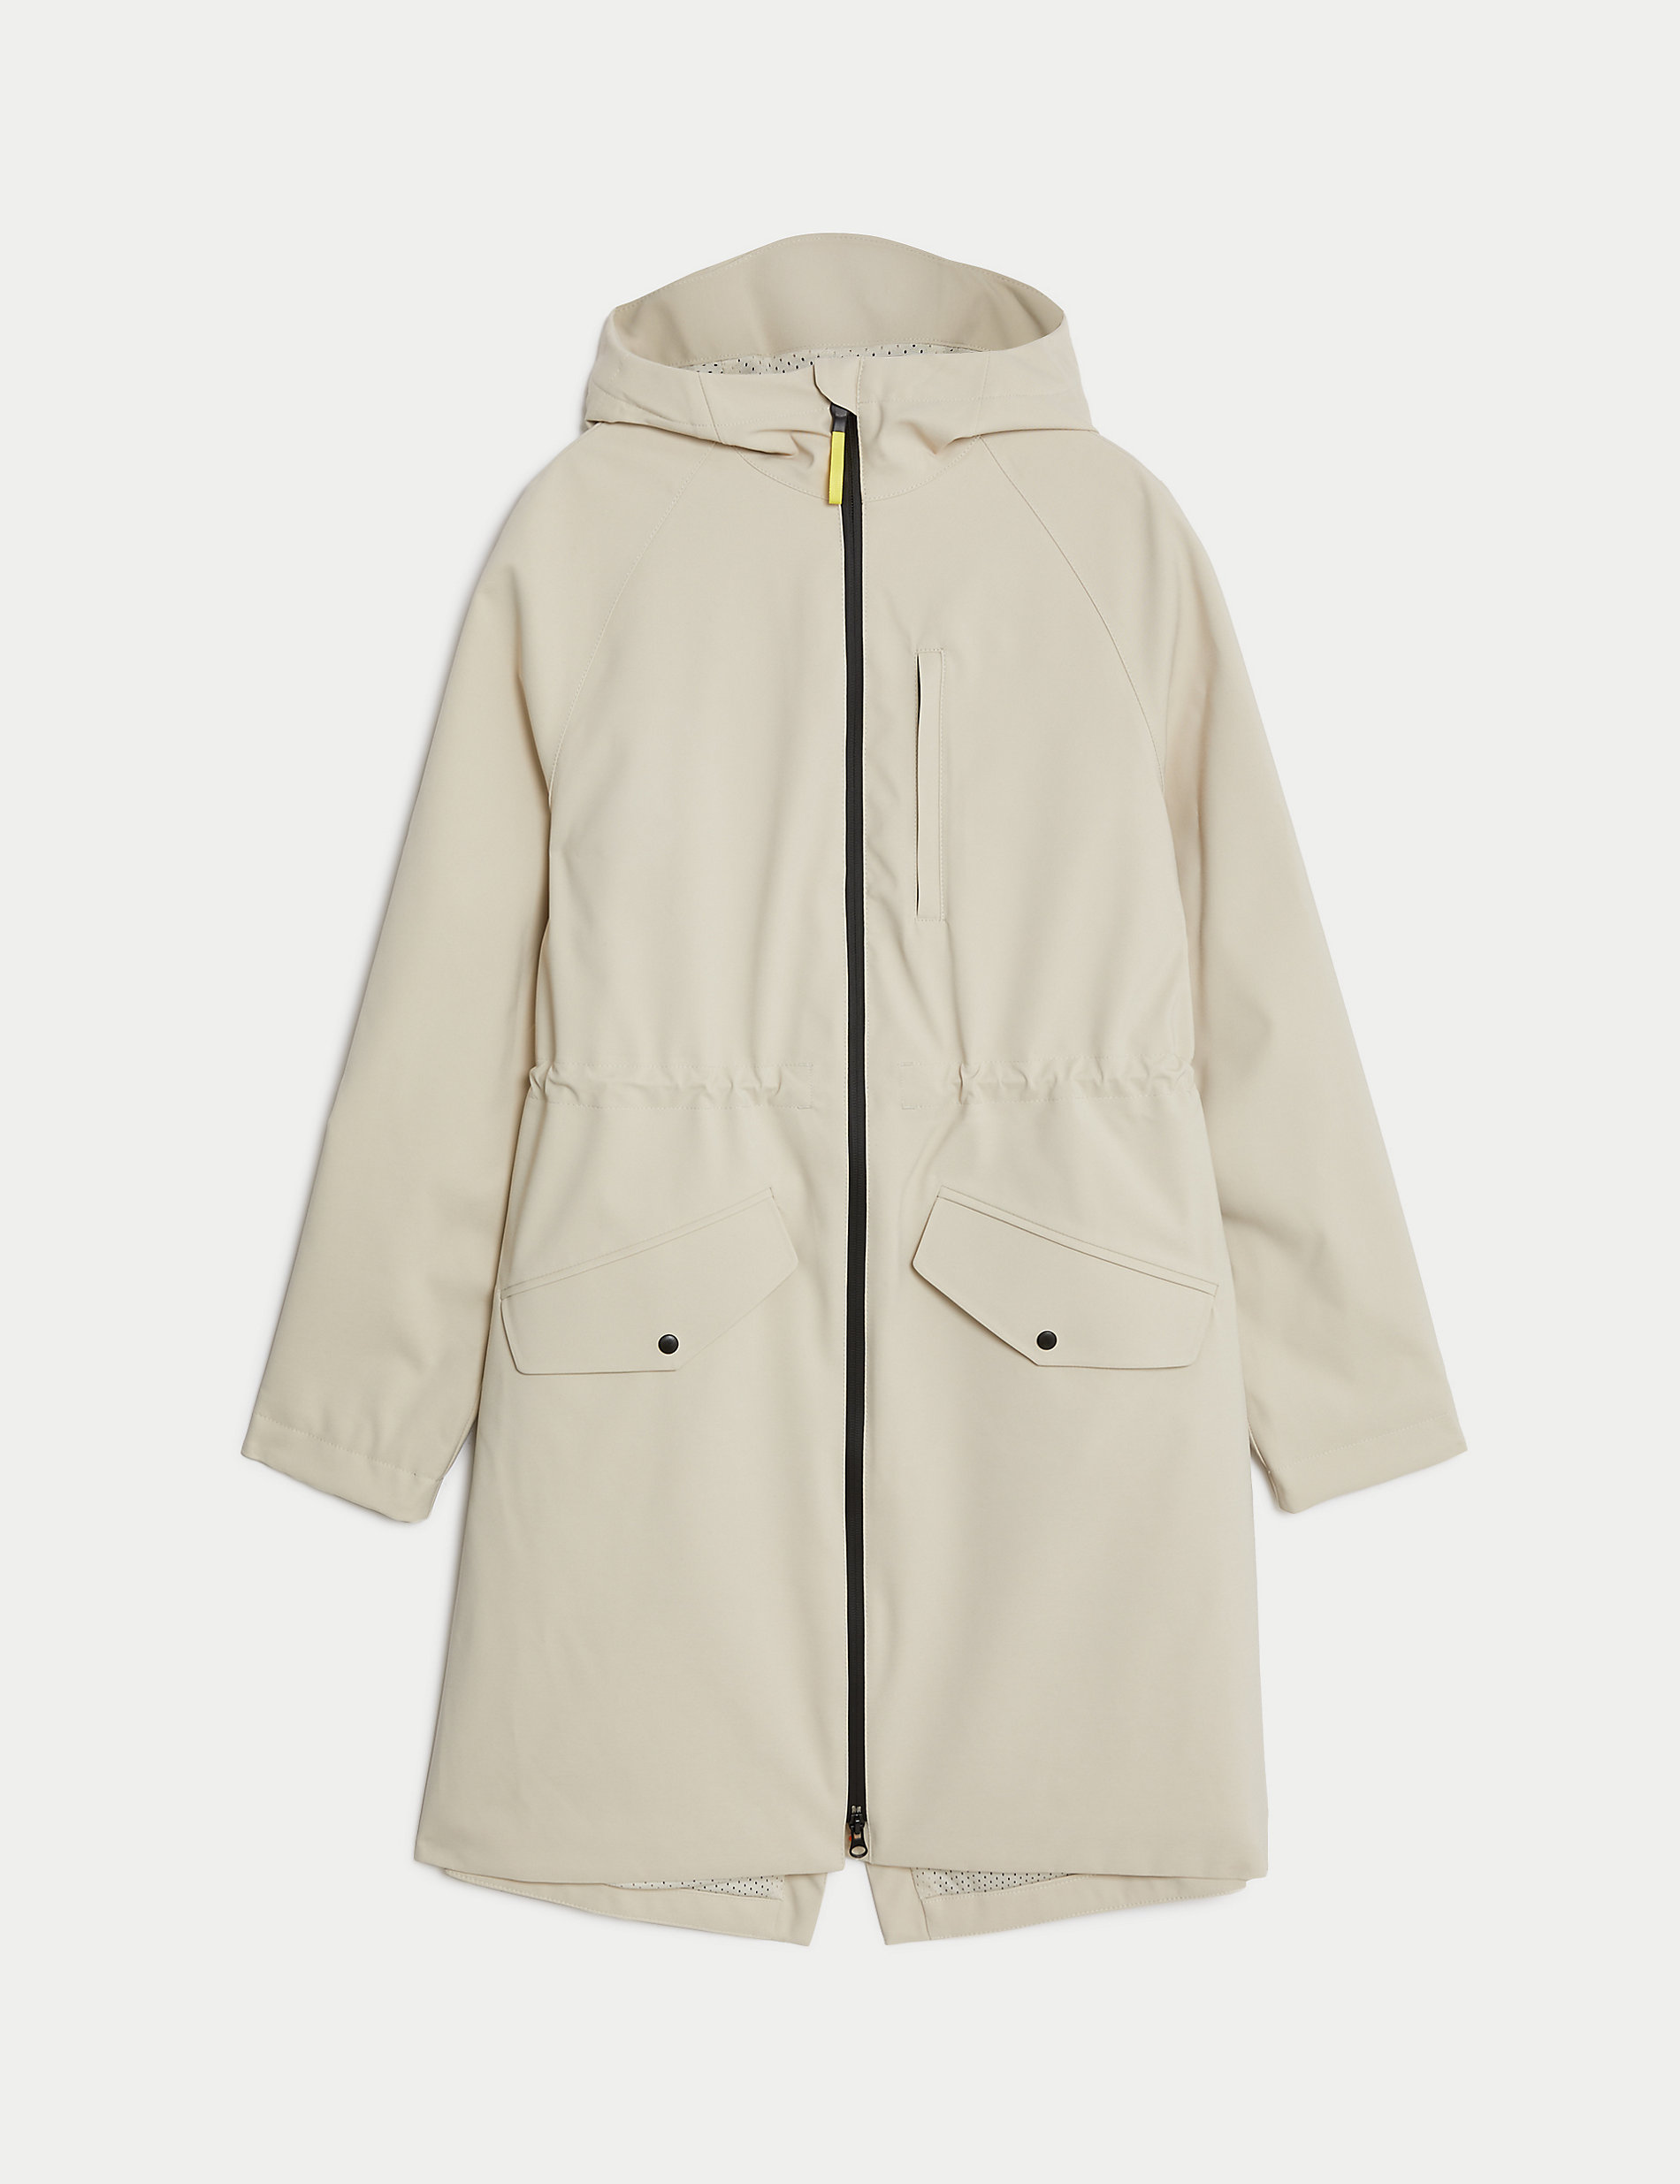 Waterproof Hooded Longline Parka Coat